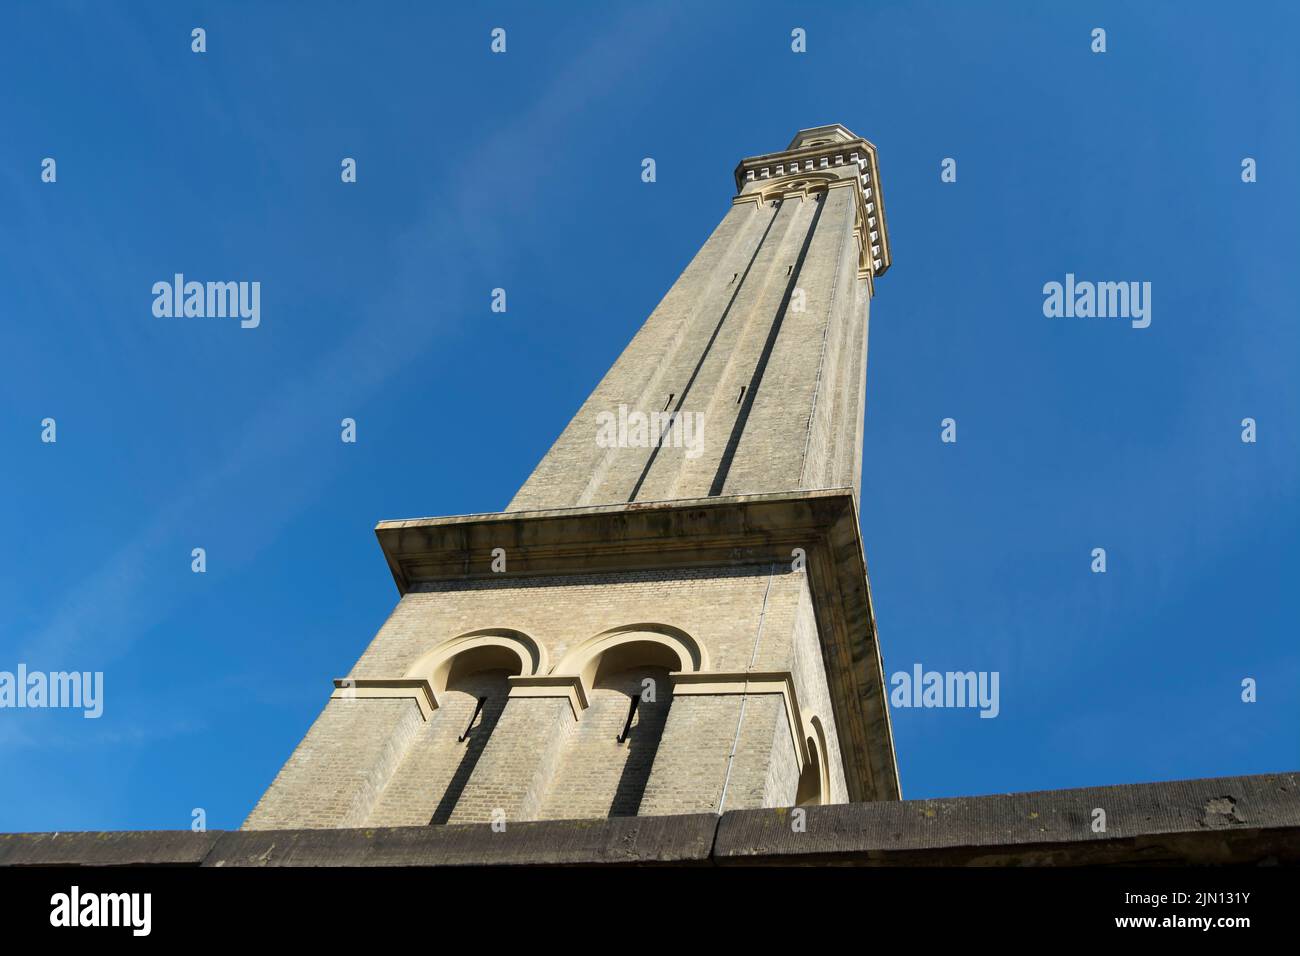 la torre a pressione dell'acqua alta 60 metri e alta 19th secolo, che ora fa parte del museo dell'acqua e del vapore di londra, brentford, londra, inghilterra Foto Stock